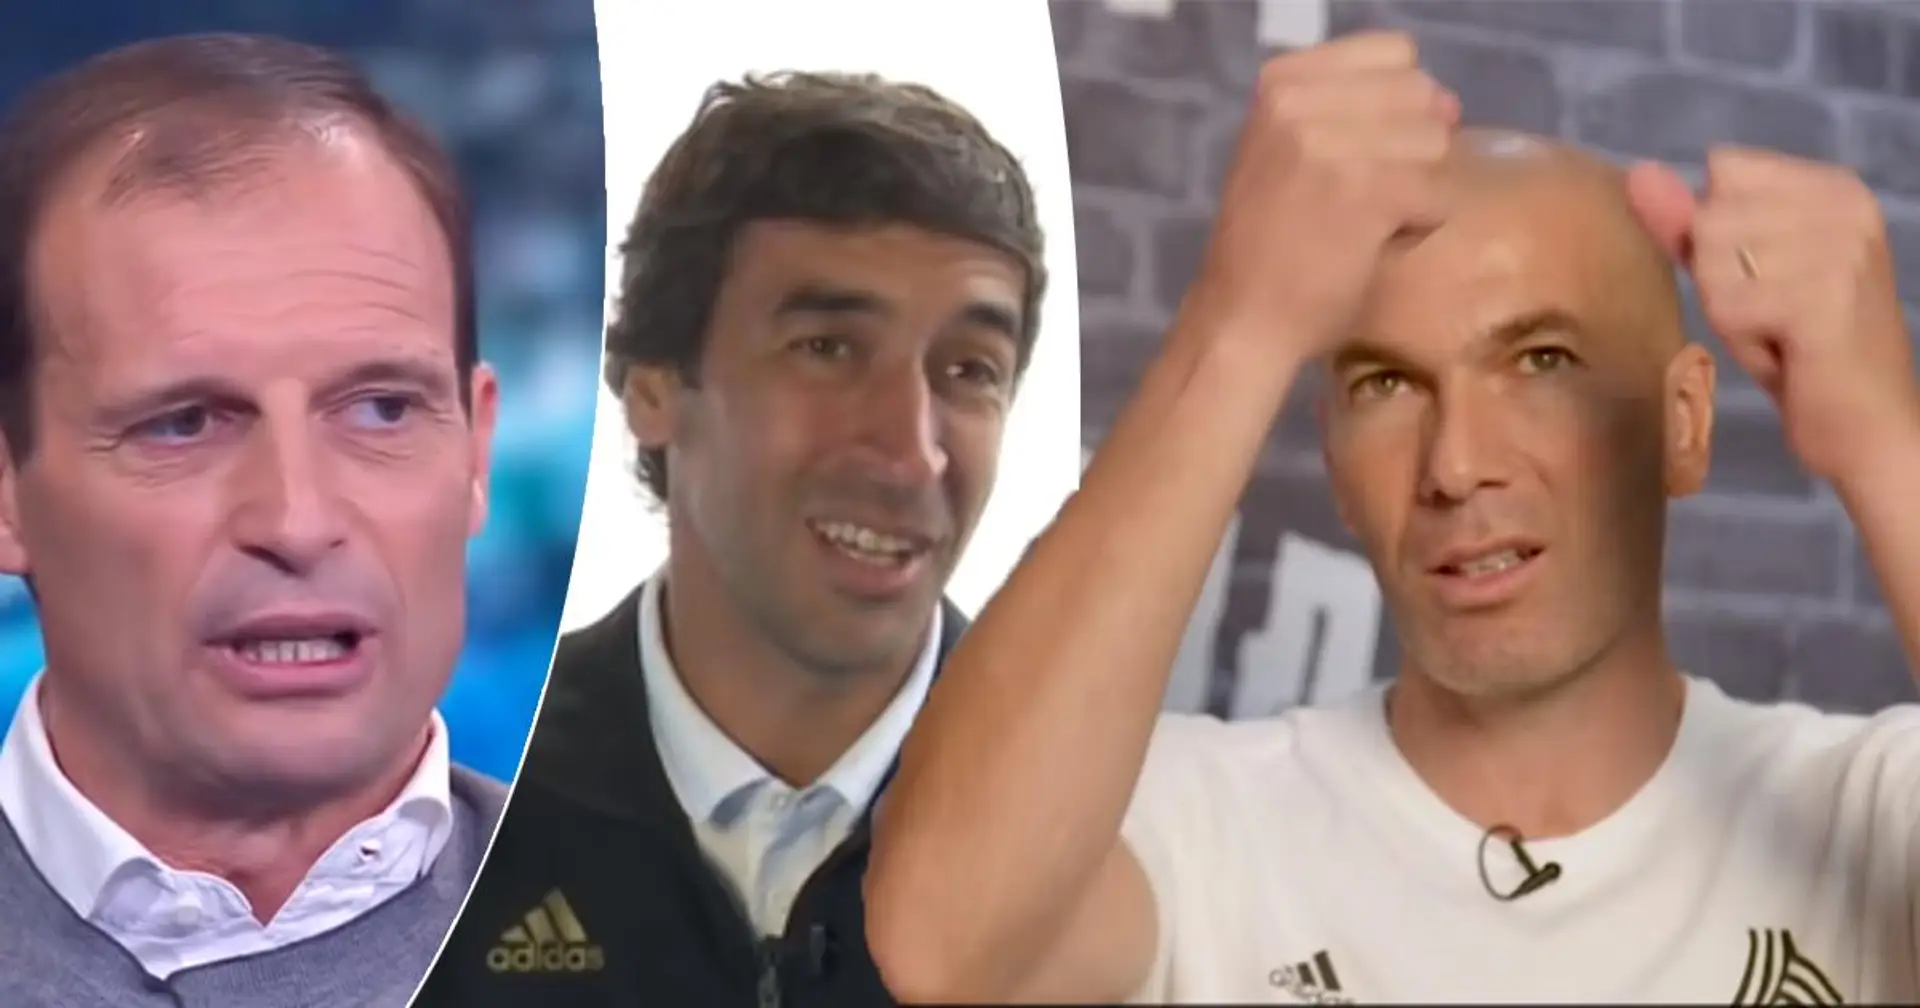 Qui sera l'entraîneur de Madrid la saison prochaine? 4 scénarios possibles avec des cotes de probabilité